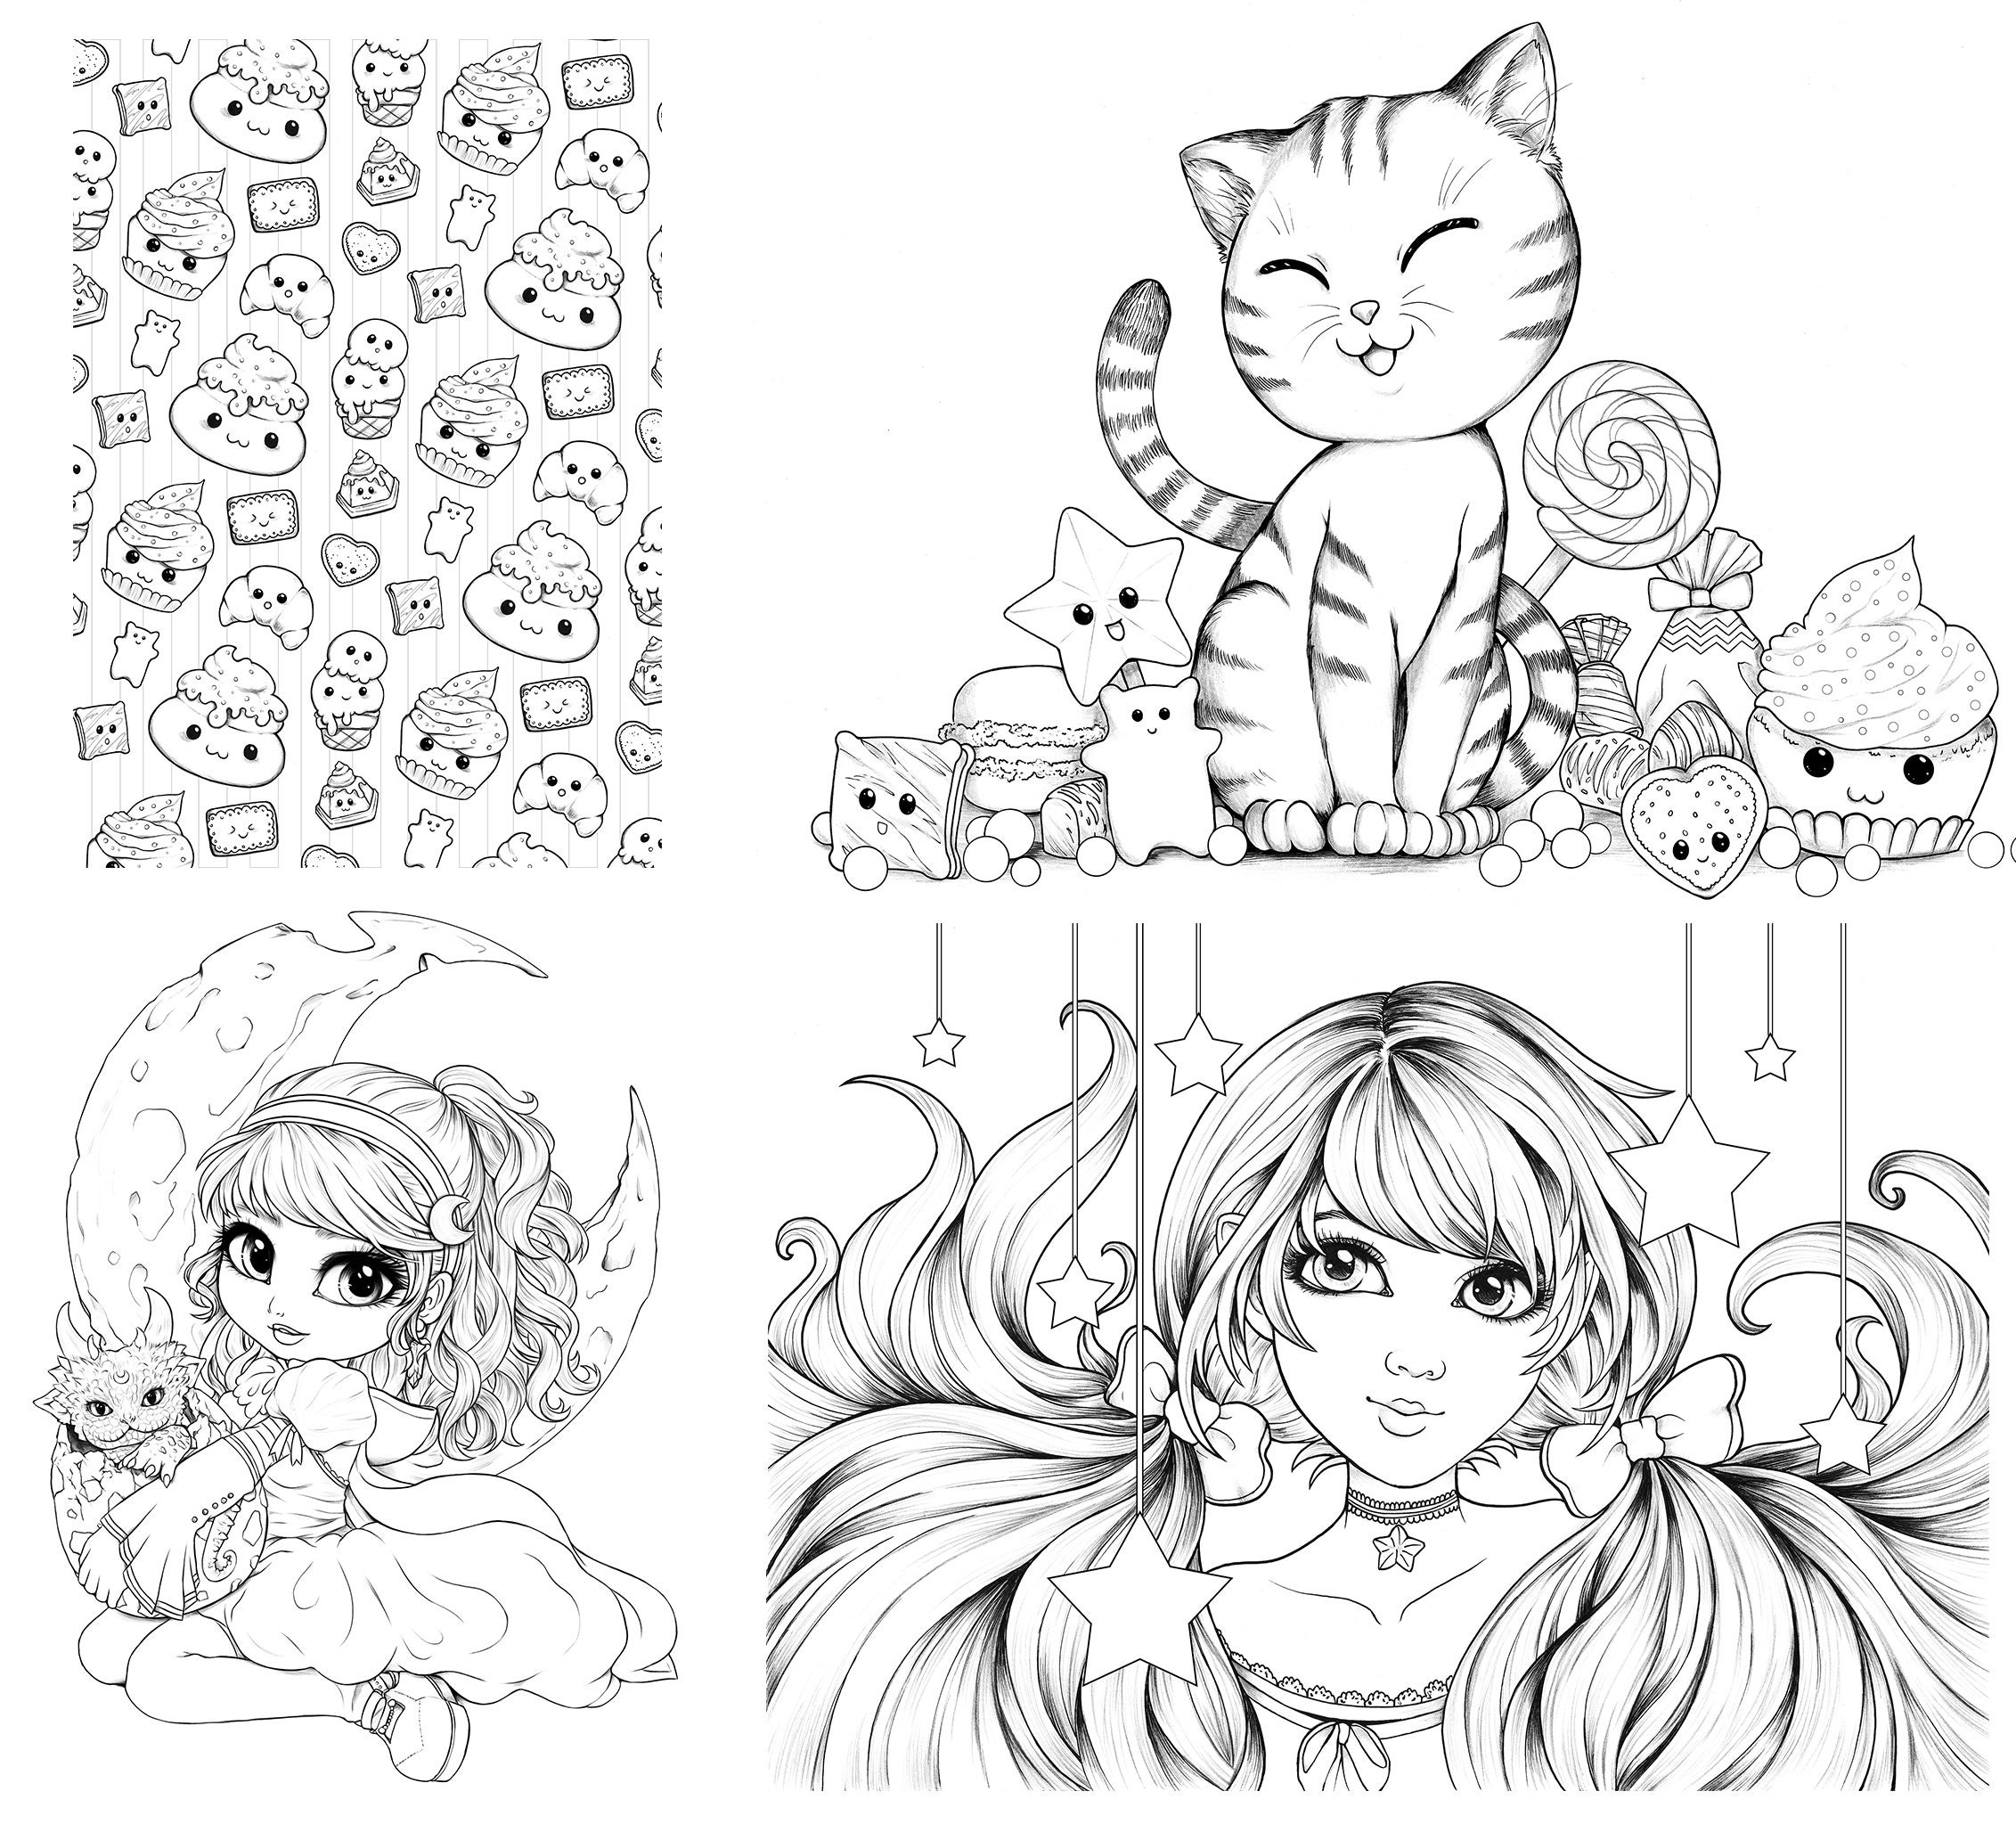 Kawaii livre de coloriage pour filles 8-12 ans: Livre de coloriage pour les  filles avec des dessins super mignons de Kawaii du monde fantaisiste des   des scènes de manga-livre coloriage chibi